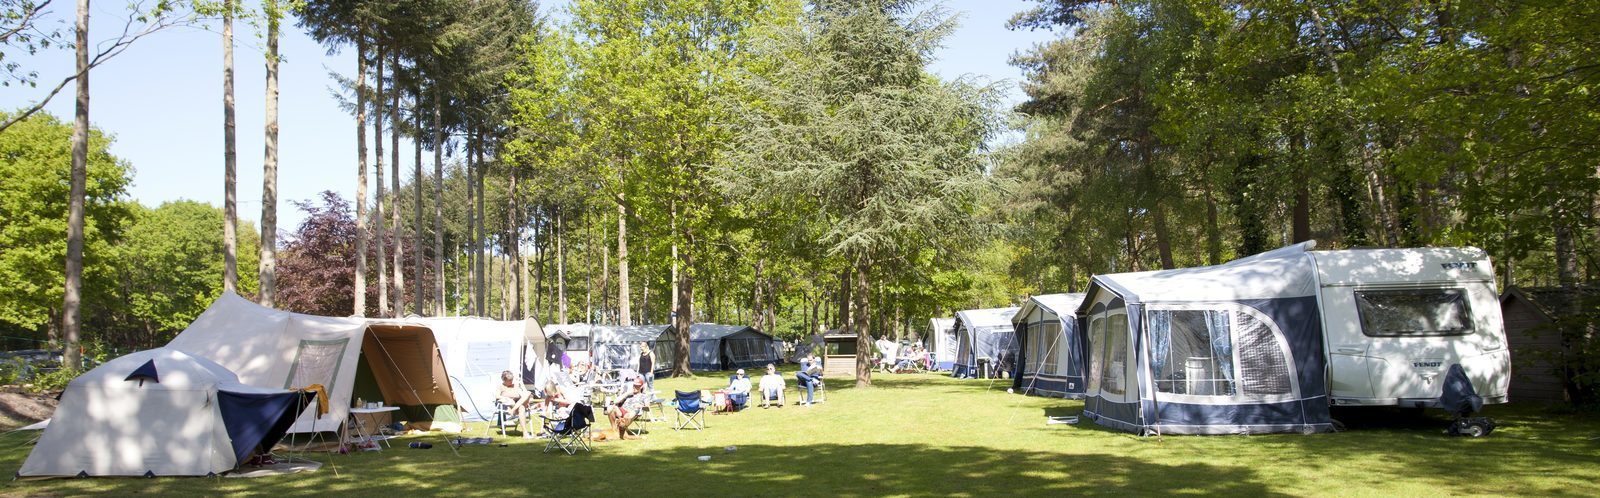 Camping Gelderland